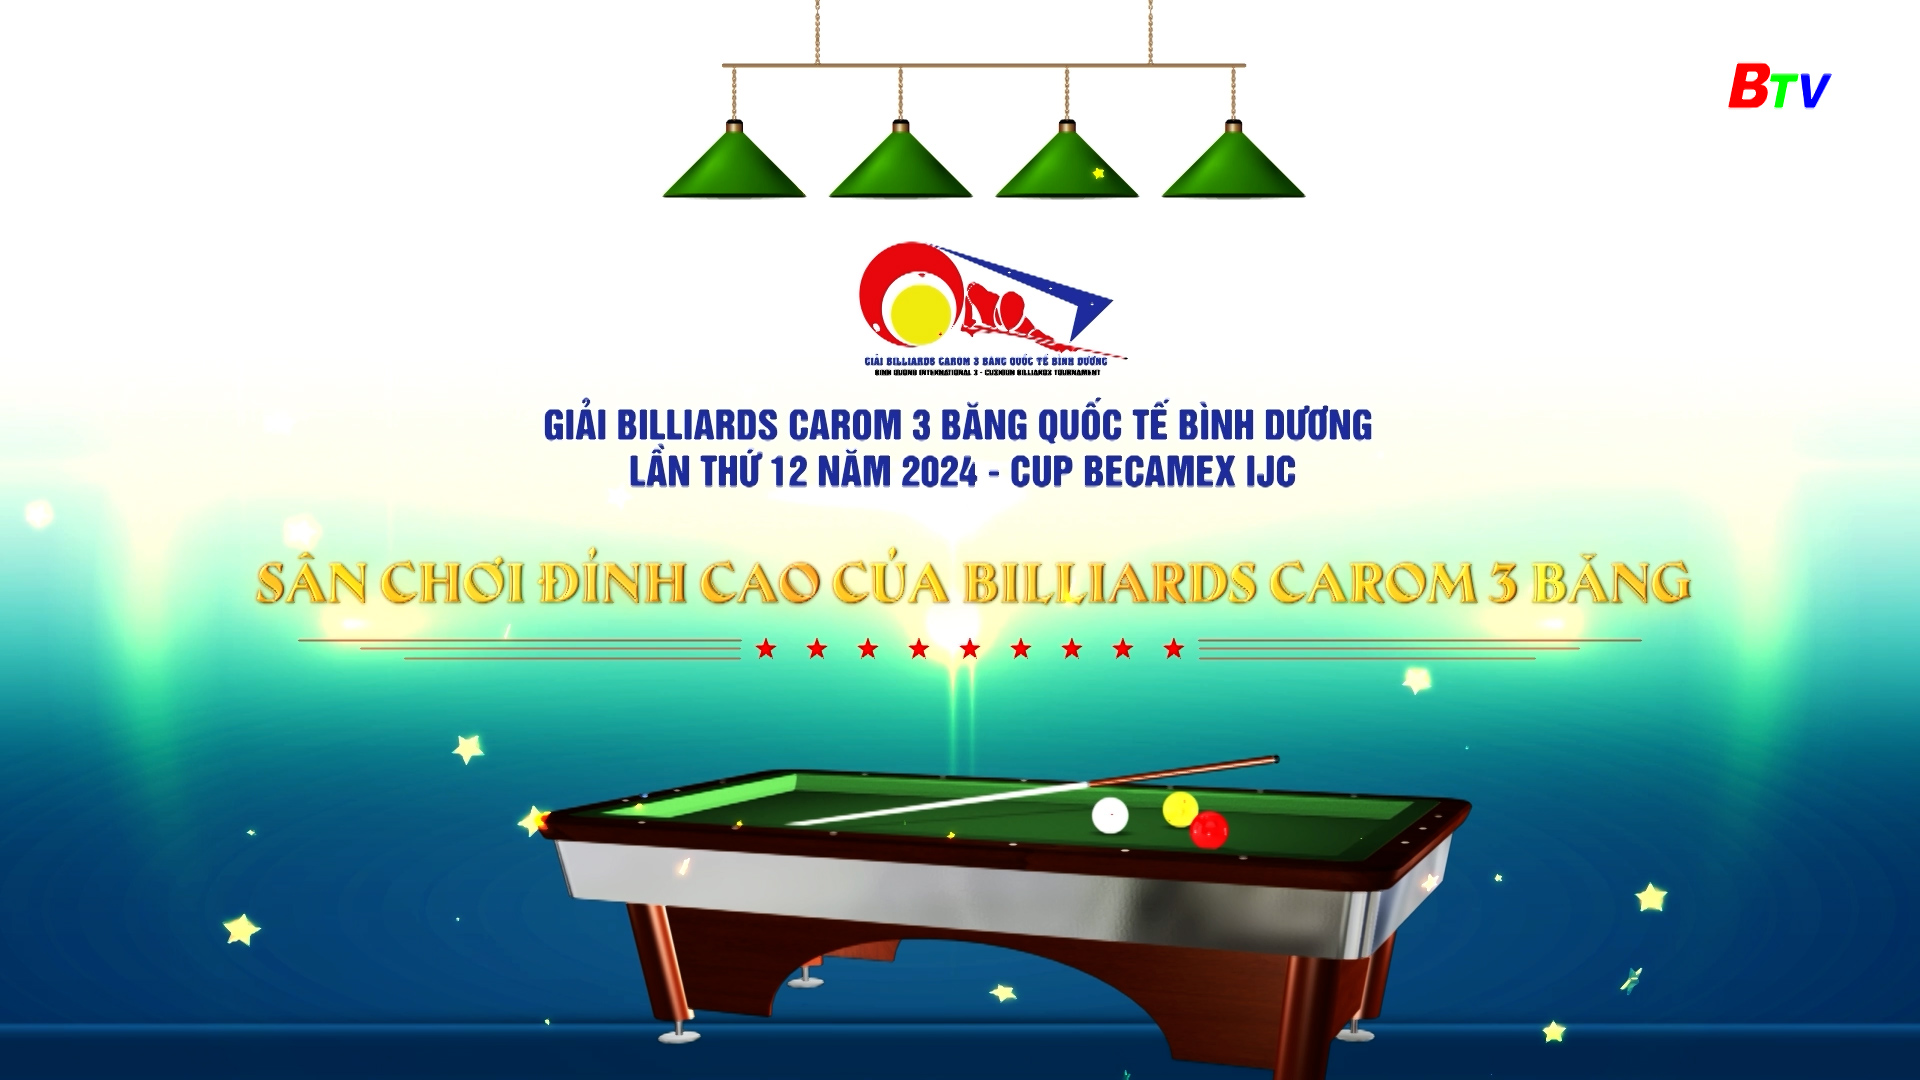 Giải Billiards Carom 3 băng Quốc tế Bình Dương lần thứ XII năm 2024 Cúp Becamex IJC